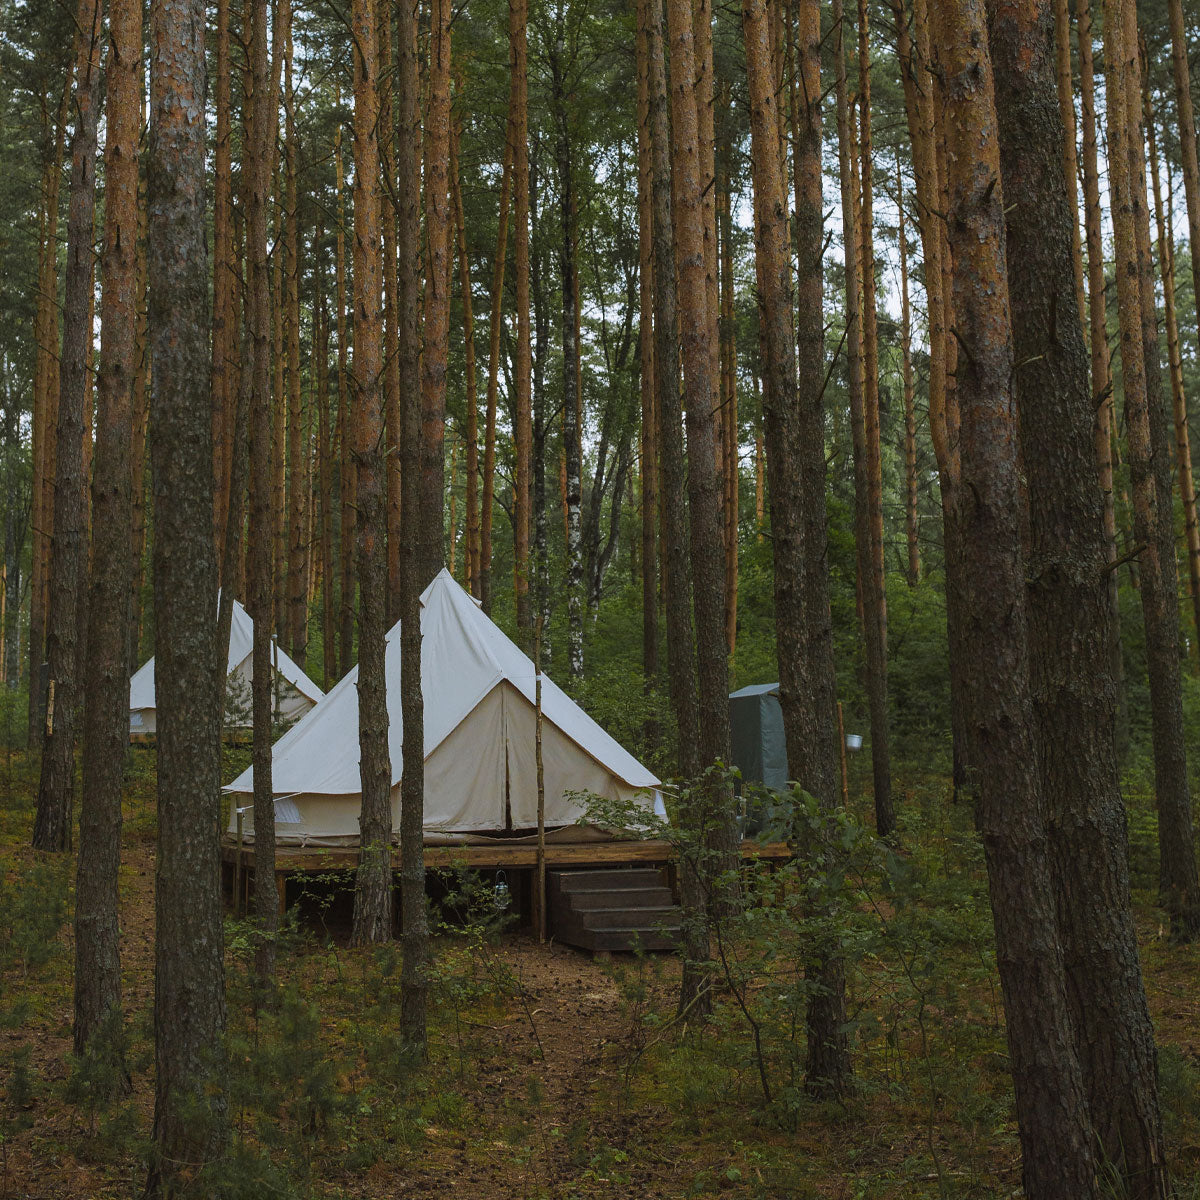 Glamping Zelte im Wald. Es fehlt nur noch ein Sanitärhaus wie unser tinyblue